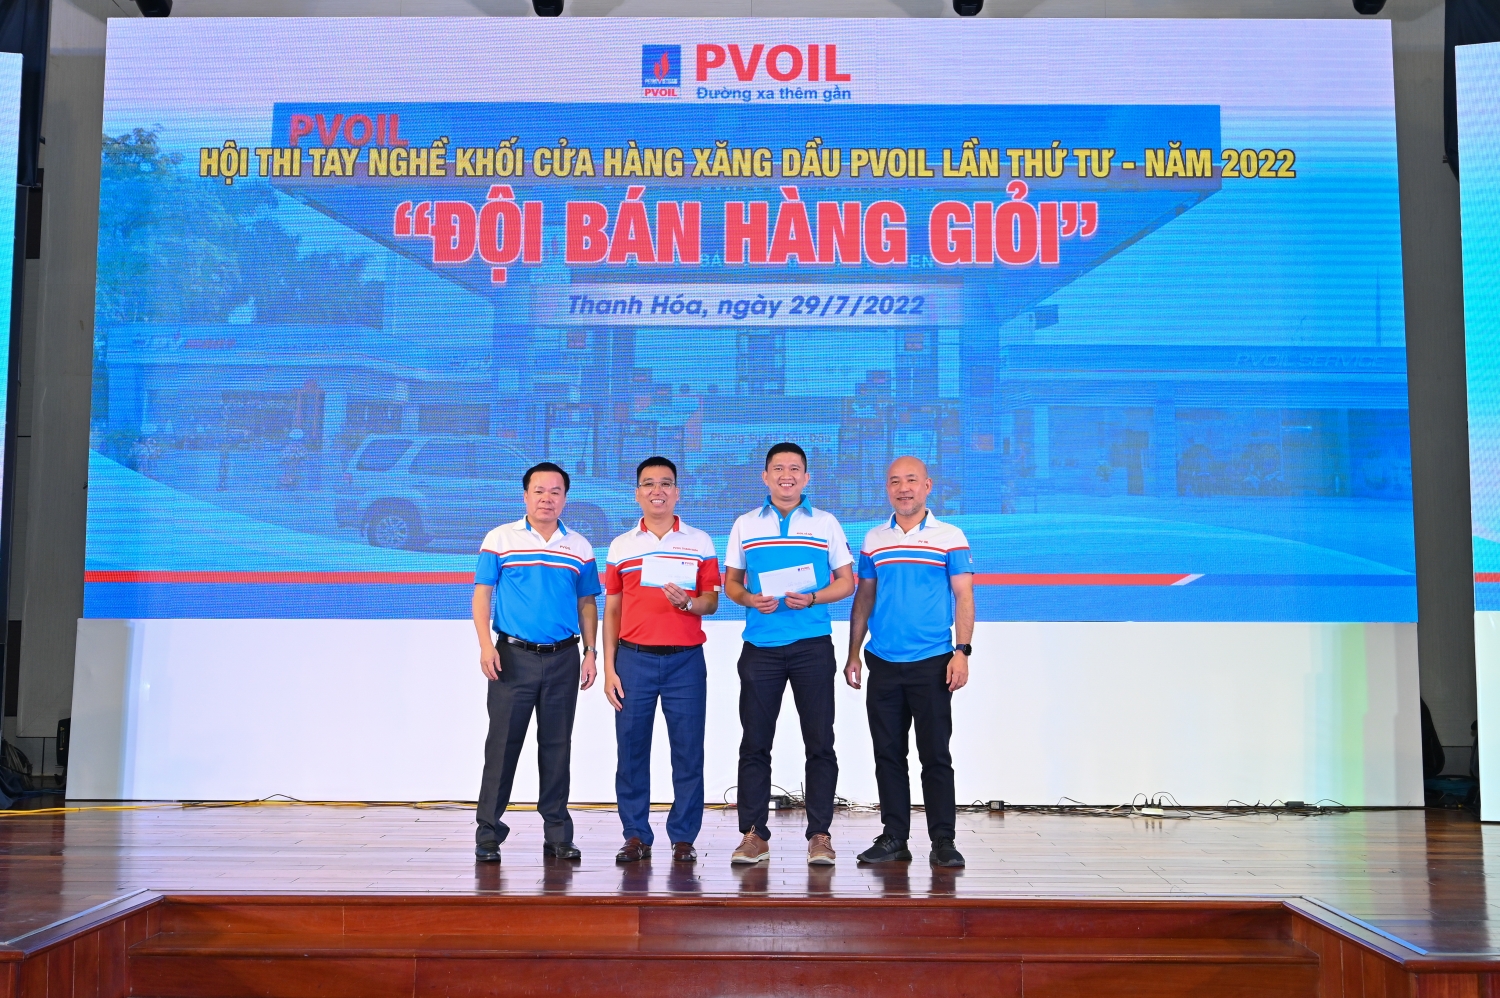 PVOIL tổ chức thành công Hội thi tay nghề khối CHXD “Đội bán hàng giỏi” lần thứ tư – năm 2022